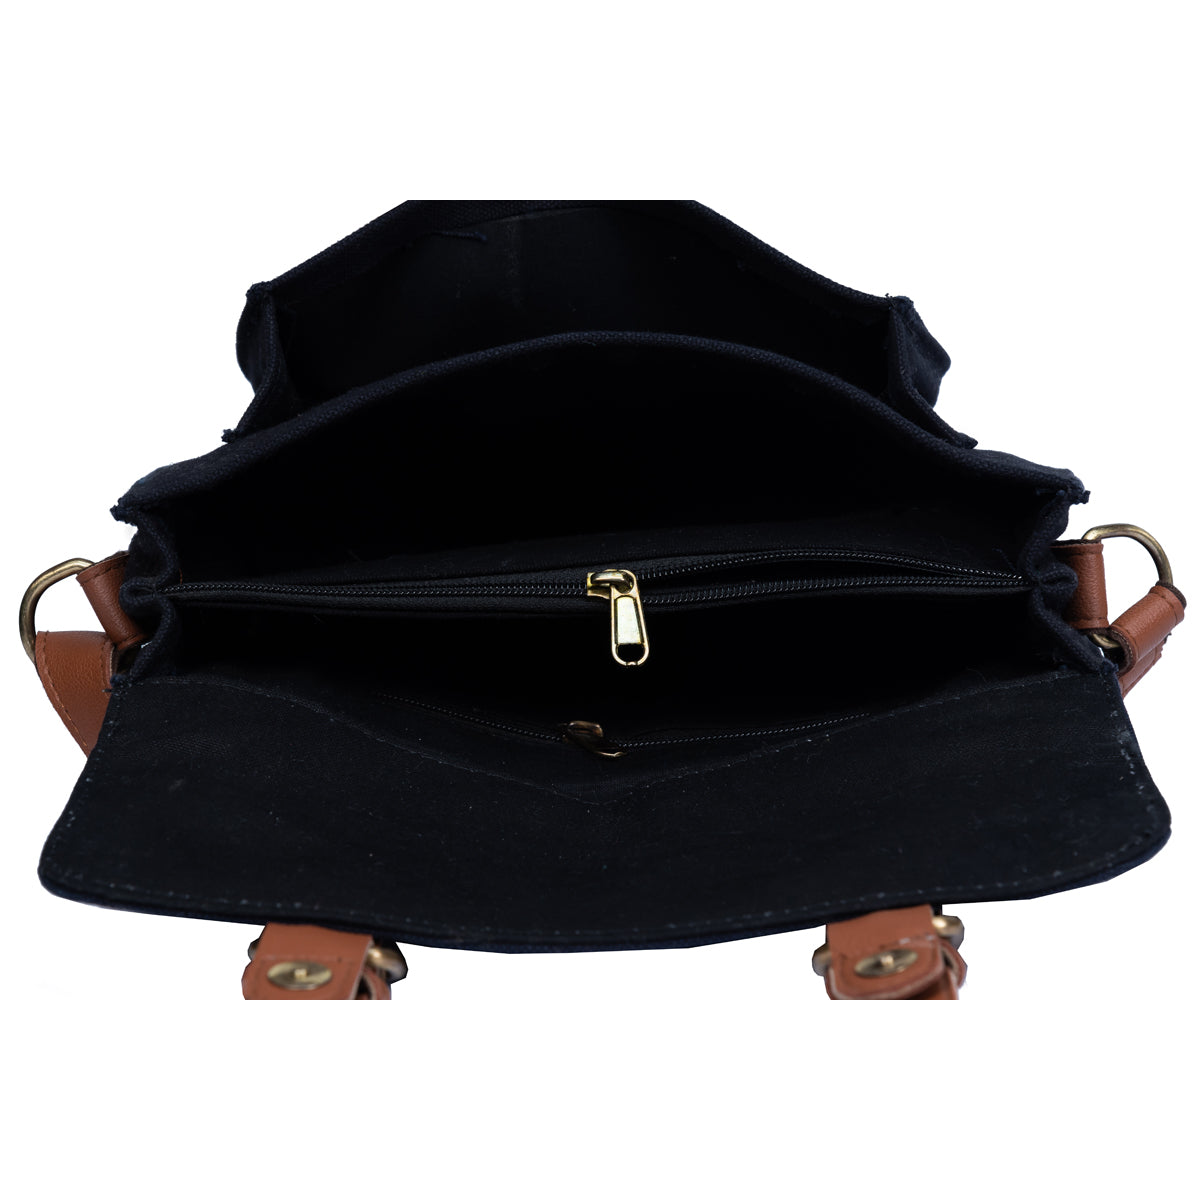 Black Satchel Bag